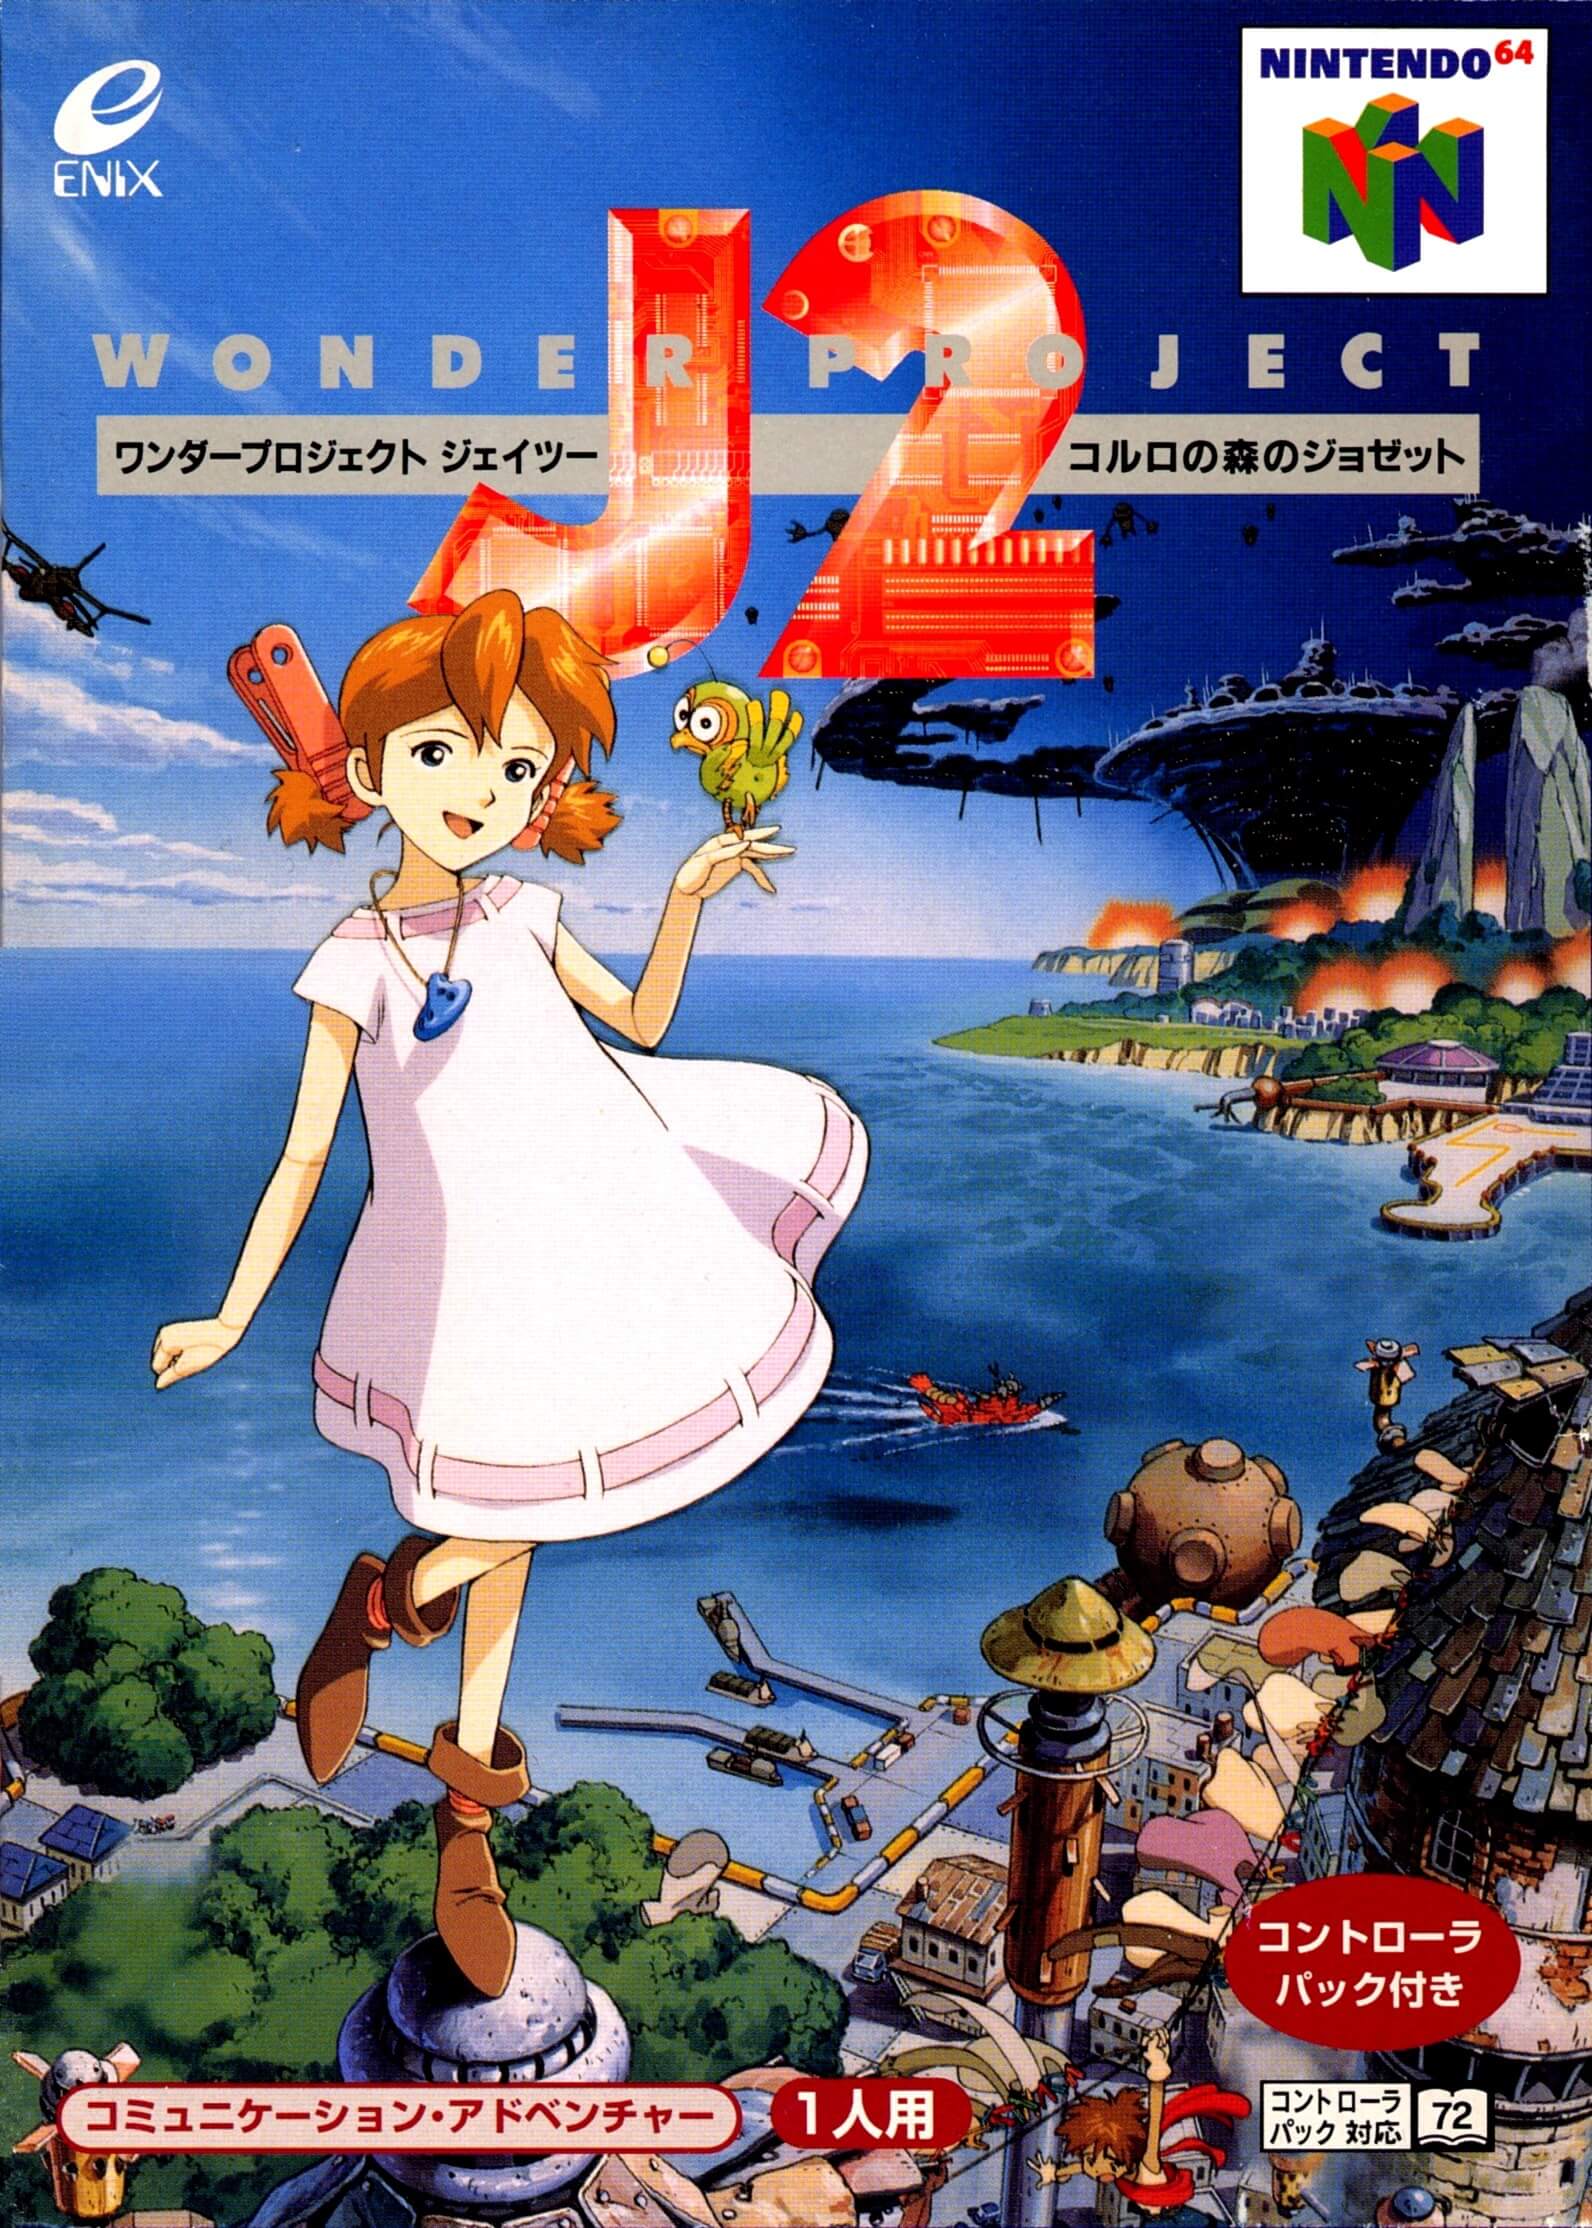 Wonder Project J2: Koruro no Mori no Jozet